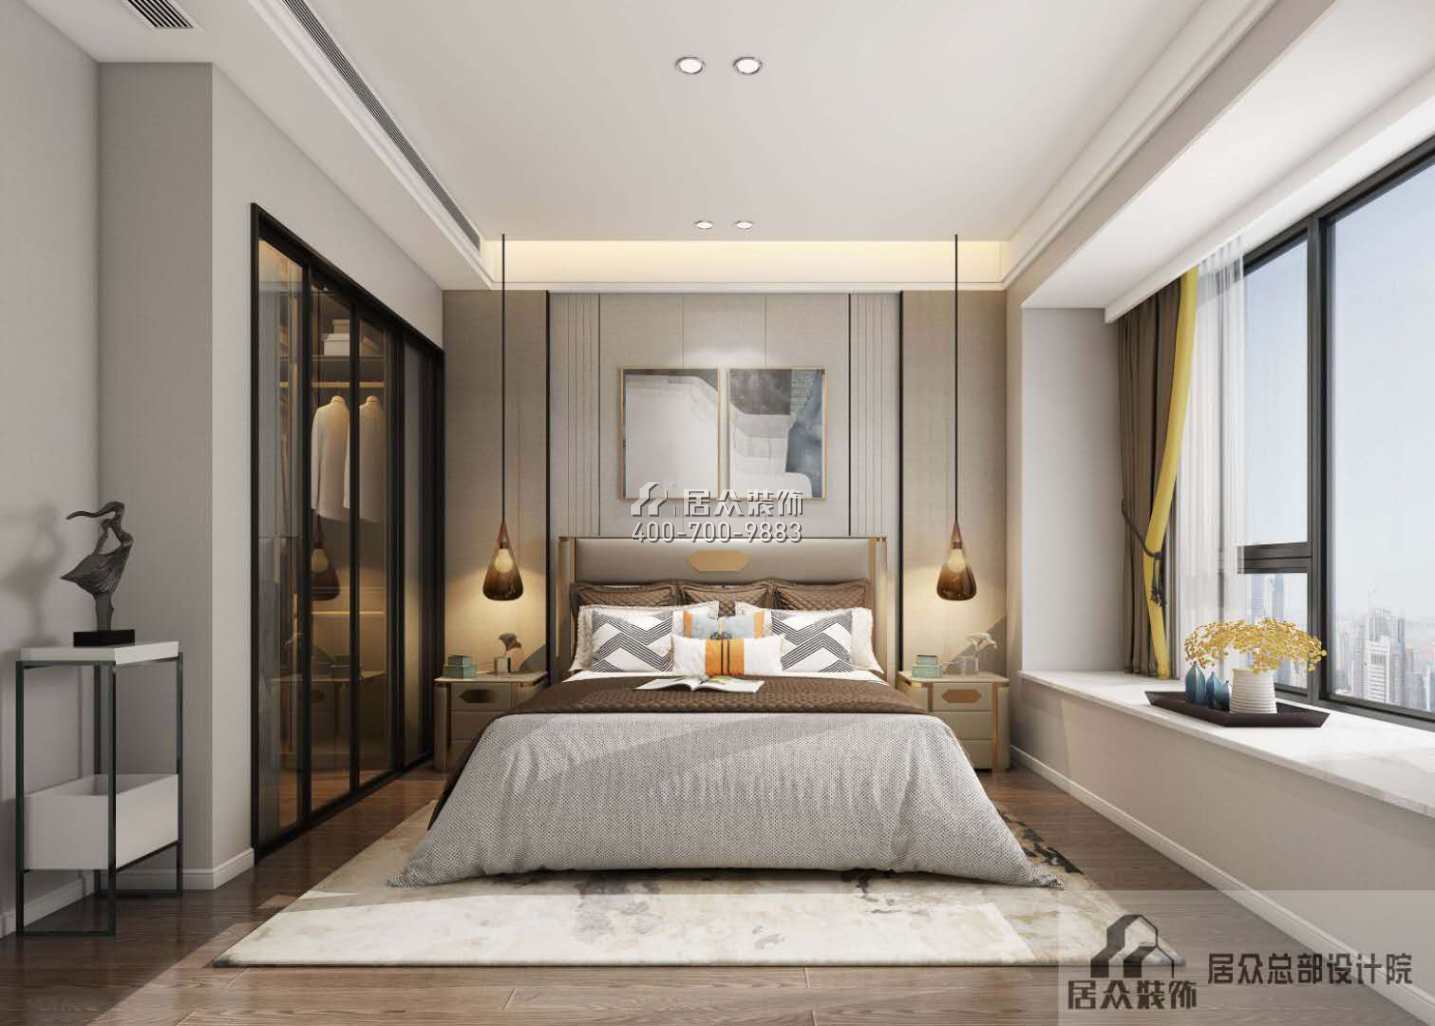 银湖蓝山润园二期120平方米现代简约风格平层户型卧室装修效果图